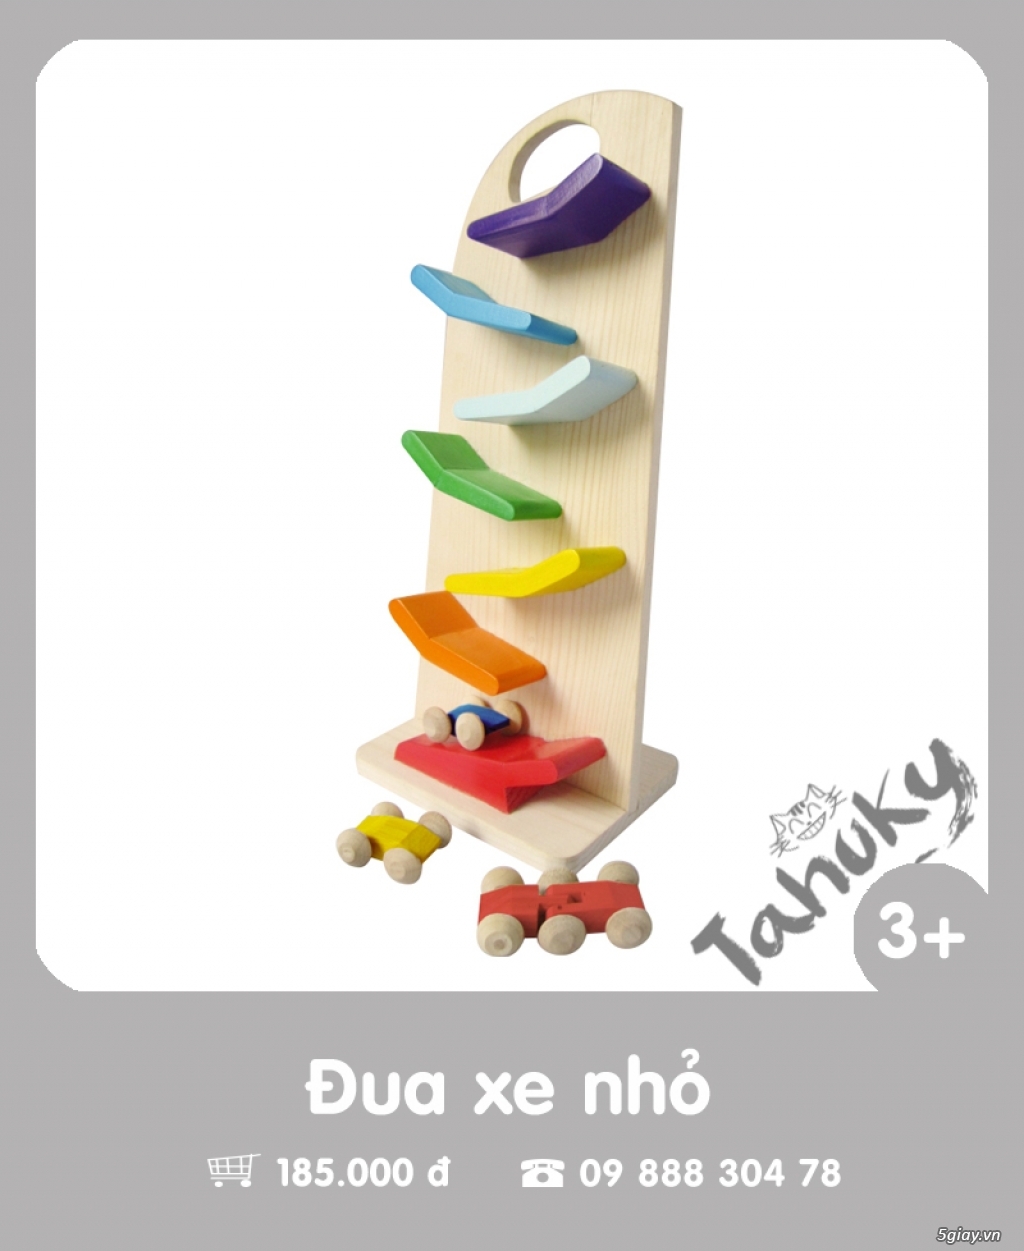 Đồ chơi gỗ an toàn Tahuky (dành cho bé từ 3-5 tuổi) - 24